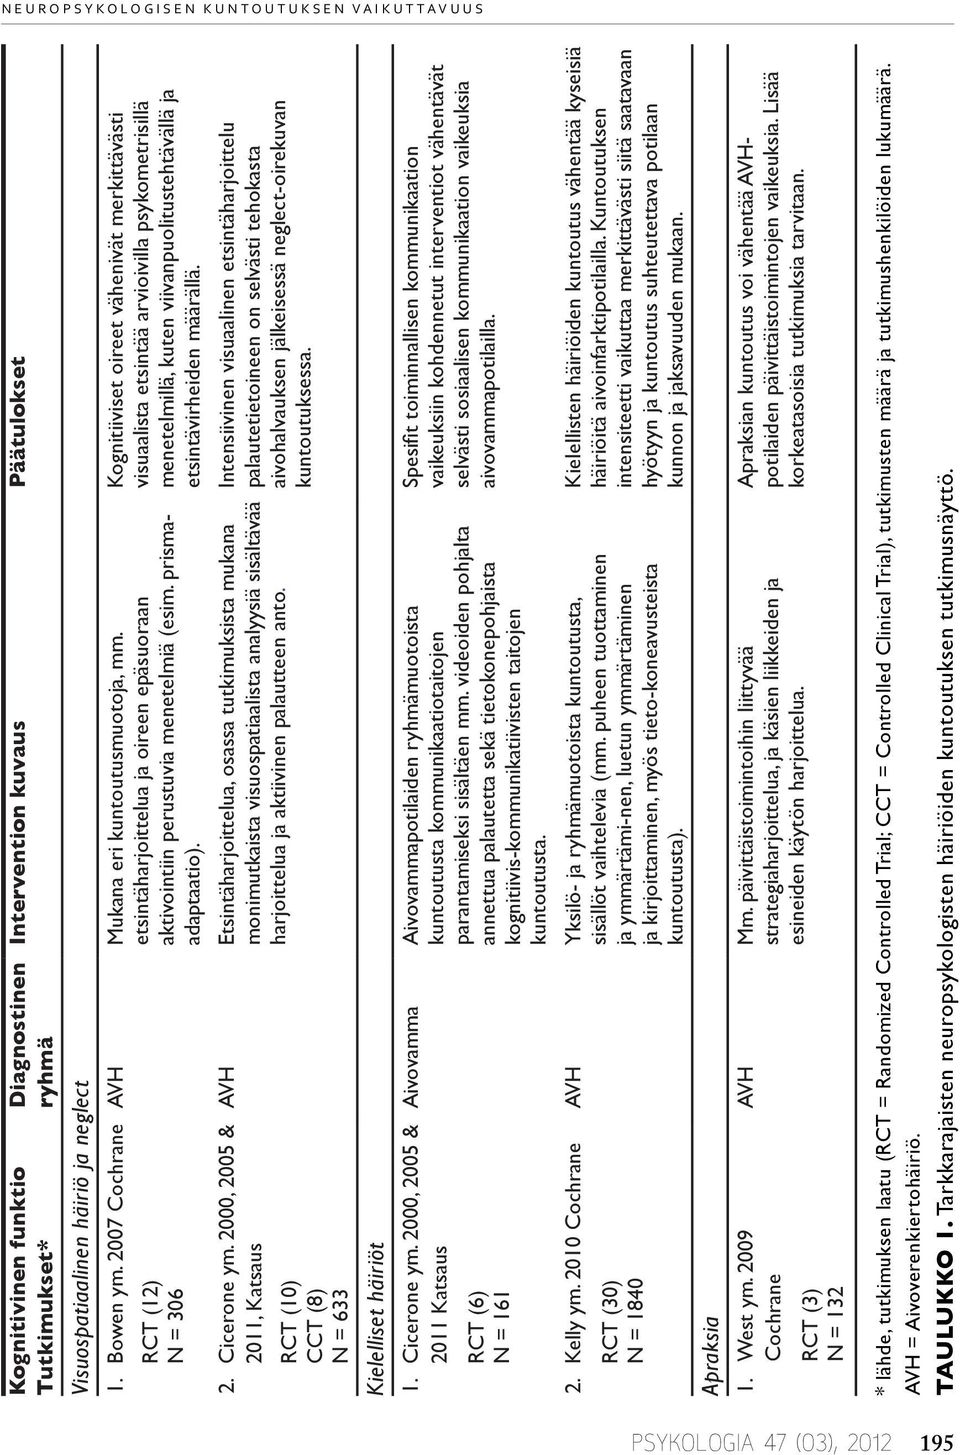 2009 Cochrane RCT (3) N = 132 Diagnostinen ryhmä Intervention kuvaus Päätulokset AVH Mukana eri kuntoutusmuotoja, mm. etsintäharjoittelua ja oireen epäsuoraan aktivointiin perustuvia menetelmiä (esim.